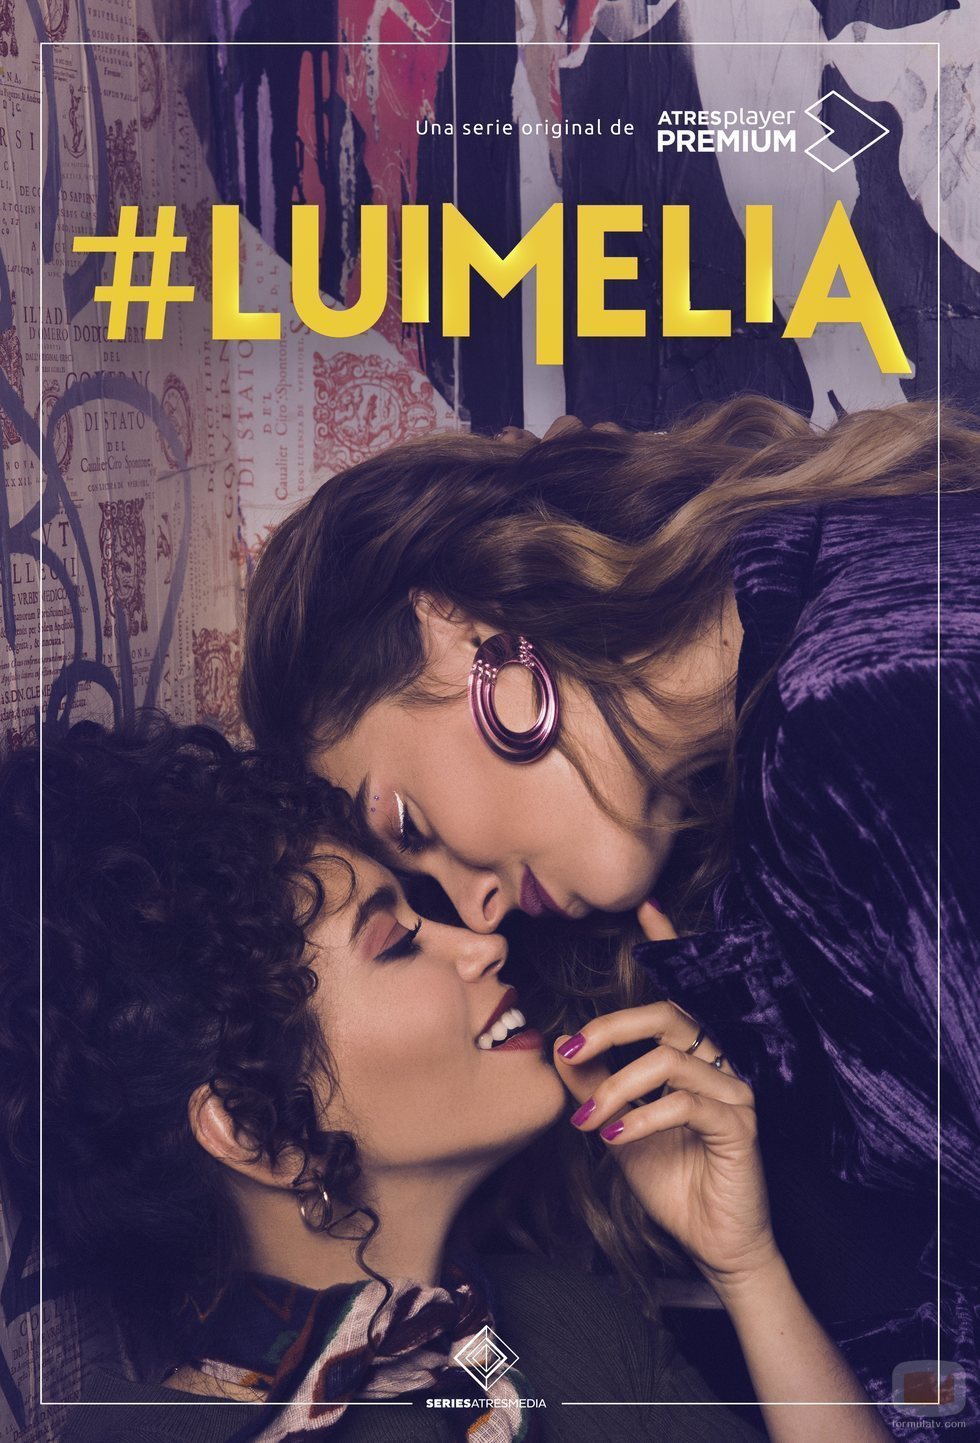 Luisita y Amelia en el cartel de '#Luimelia', spin-off de 'Amar es para siempre'